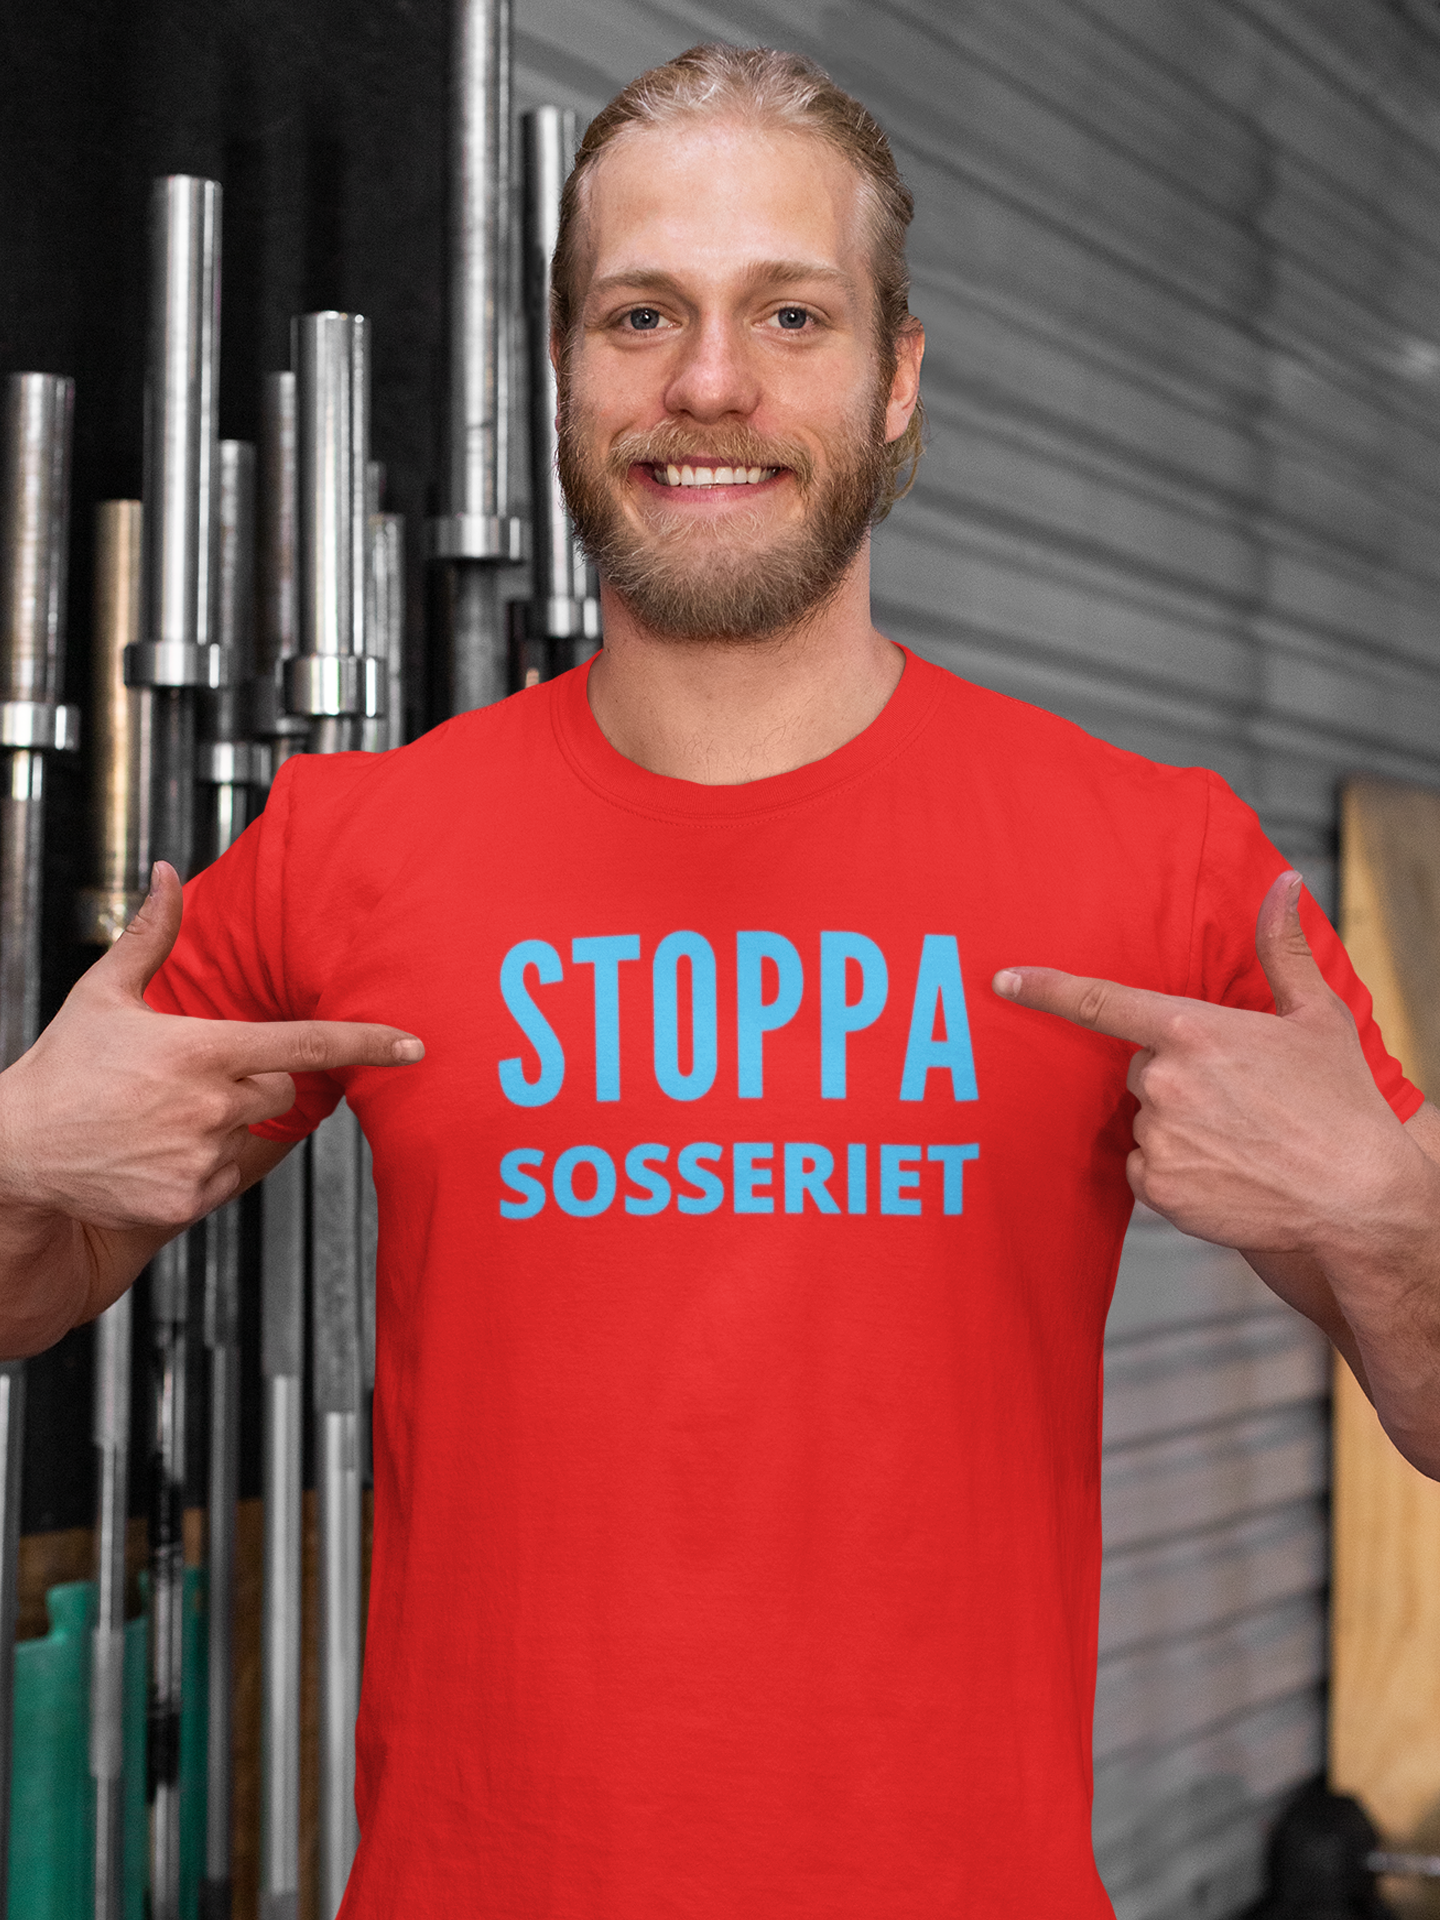 T-Shirt Stoppa Sosseriet, Sverigedemokraterna, SD, Anti Sosse, Antisocialdemokrat